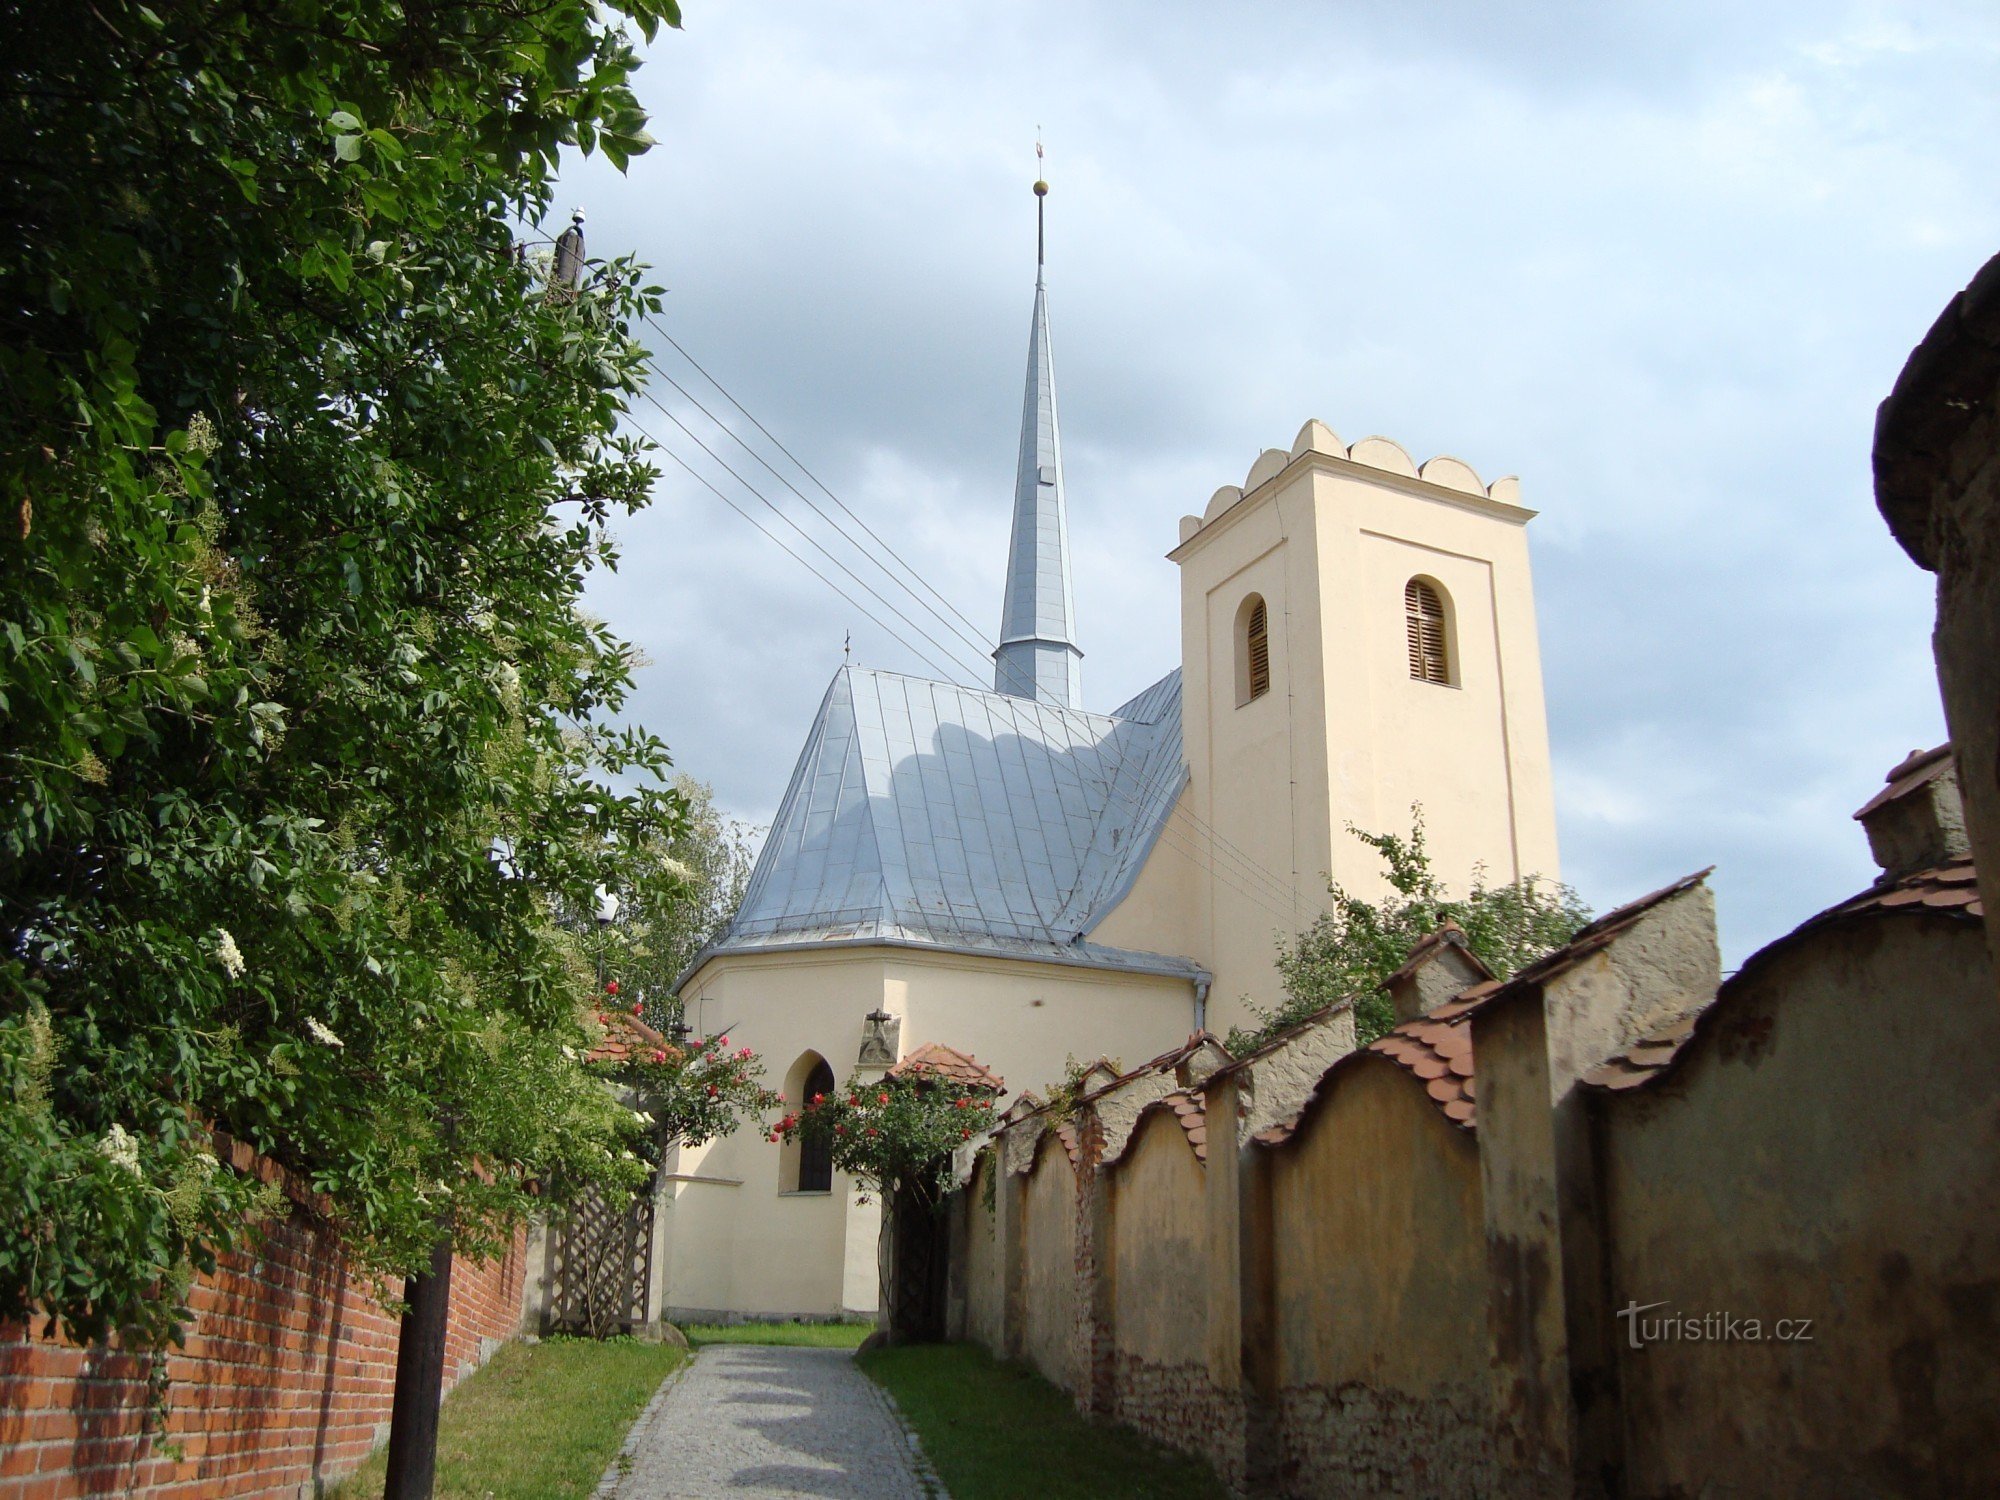 Slavonín - église paroissiale Saint-André - Photo : Ulrych Mir.